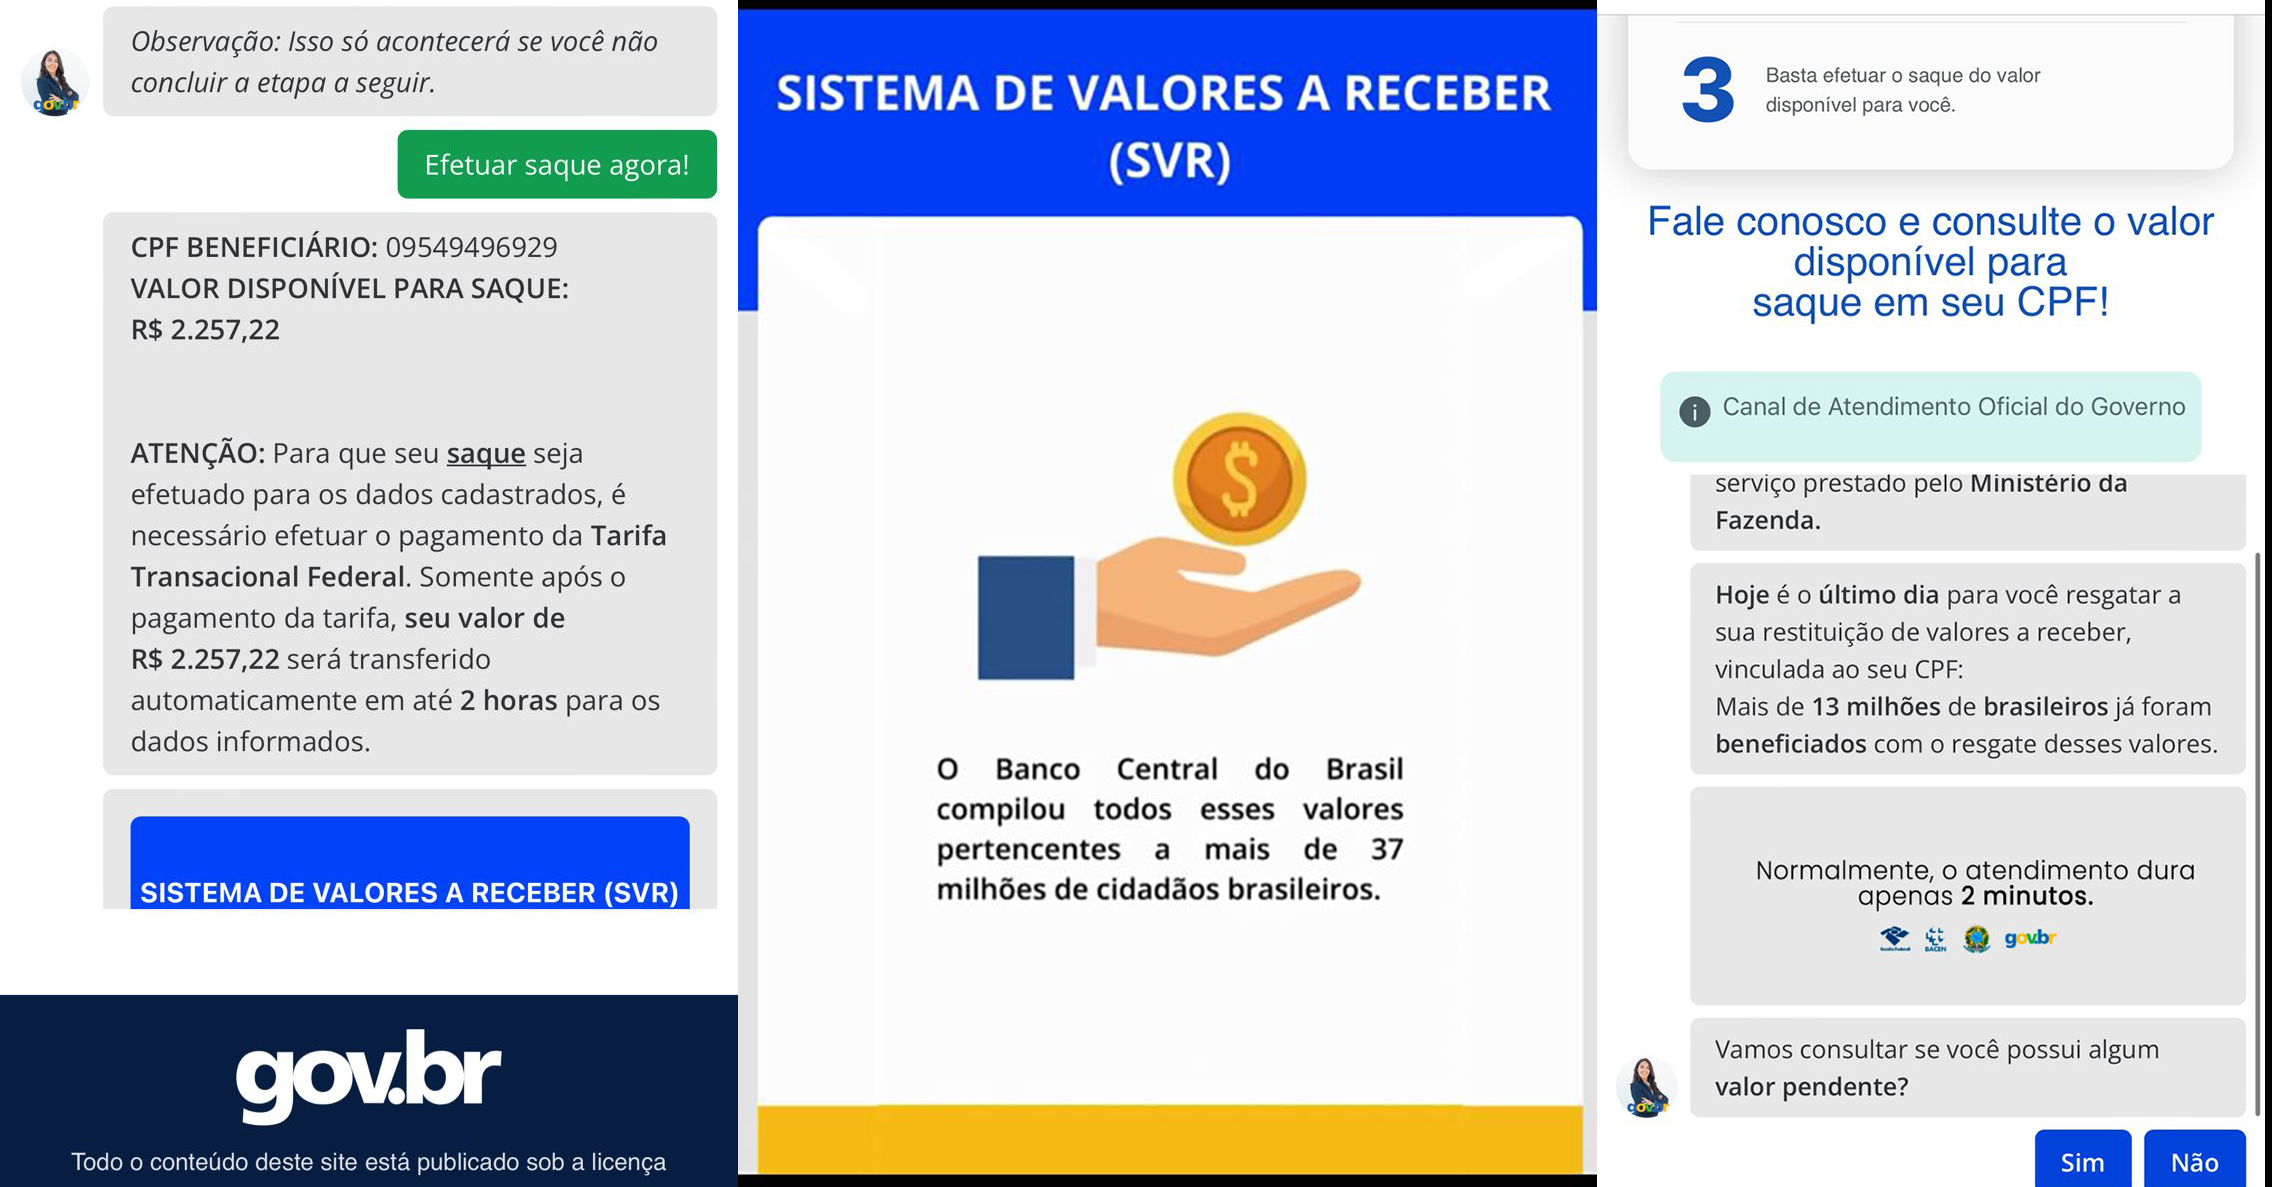 Jornal Ilustrado - Procon alerta para golpe de possíveis valores a receber em site falso do Gov.br